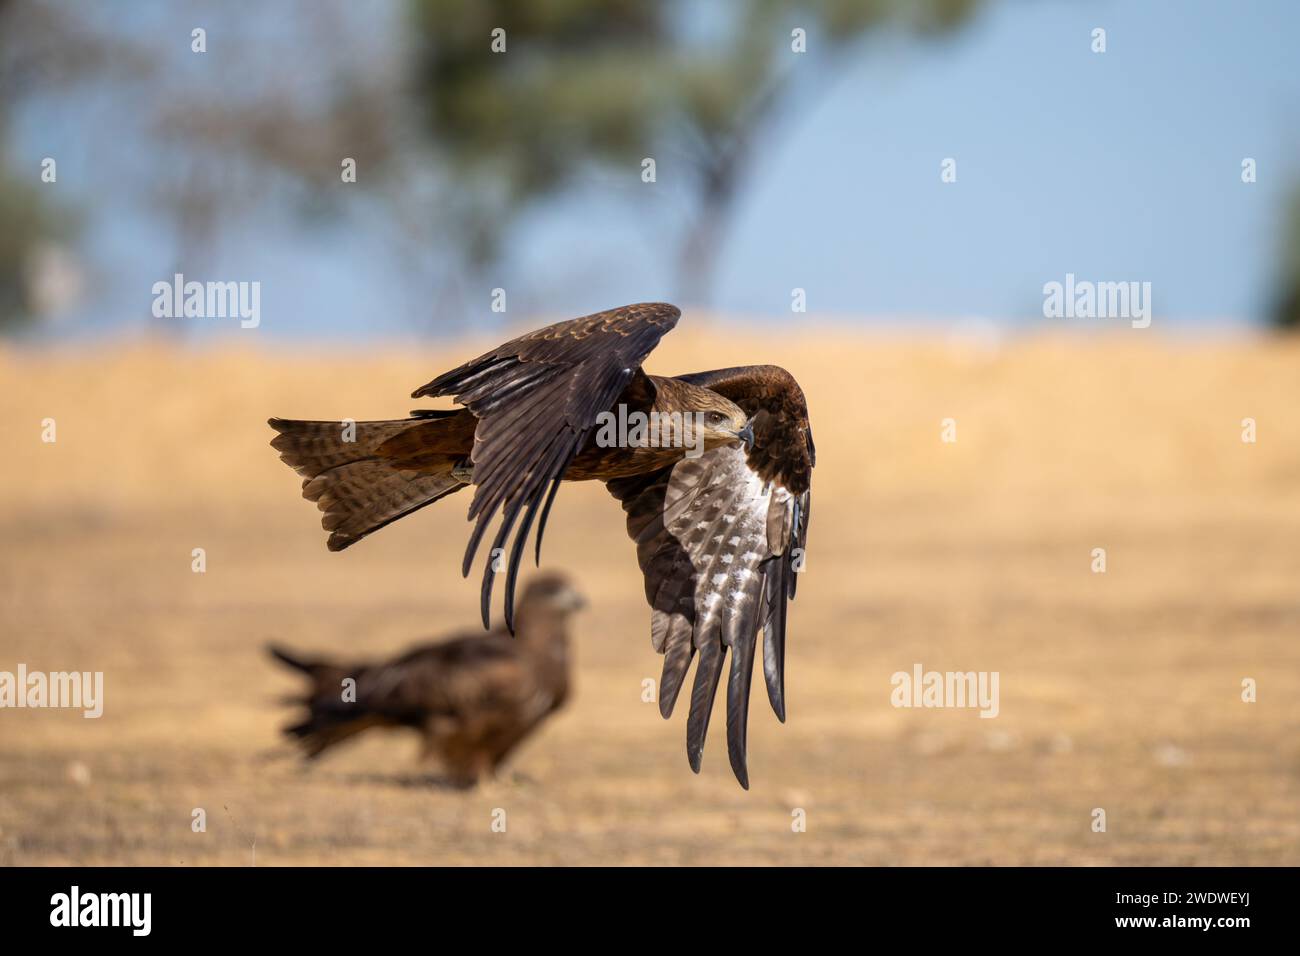 Der schwarze Drache (Milvus migrans) ist ein mittelgroßer Raubvogel in der Familie Stockfoto